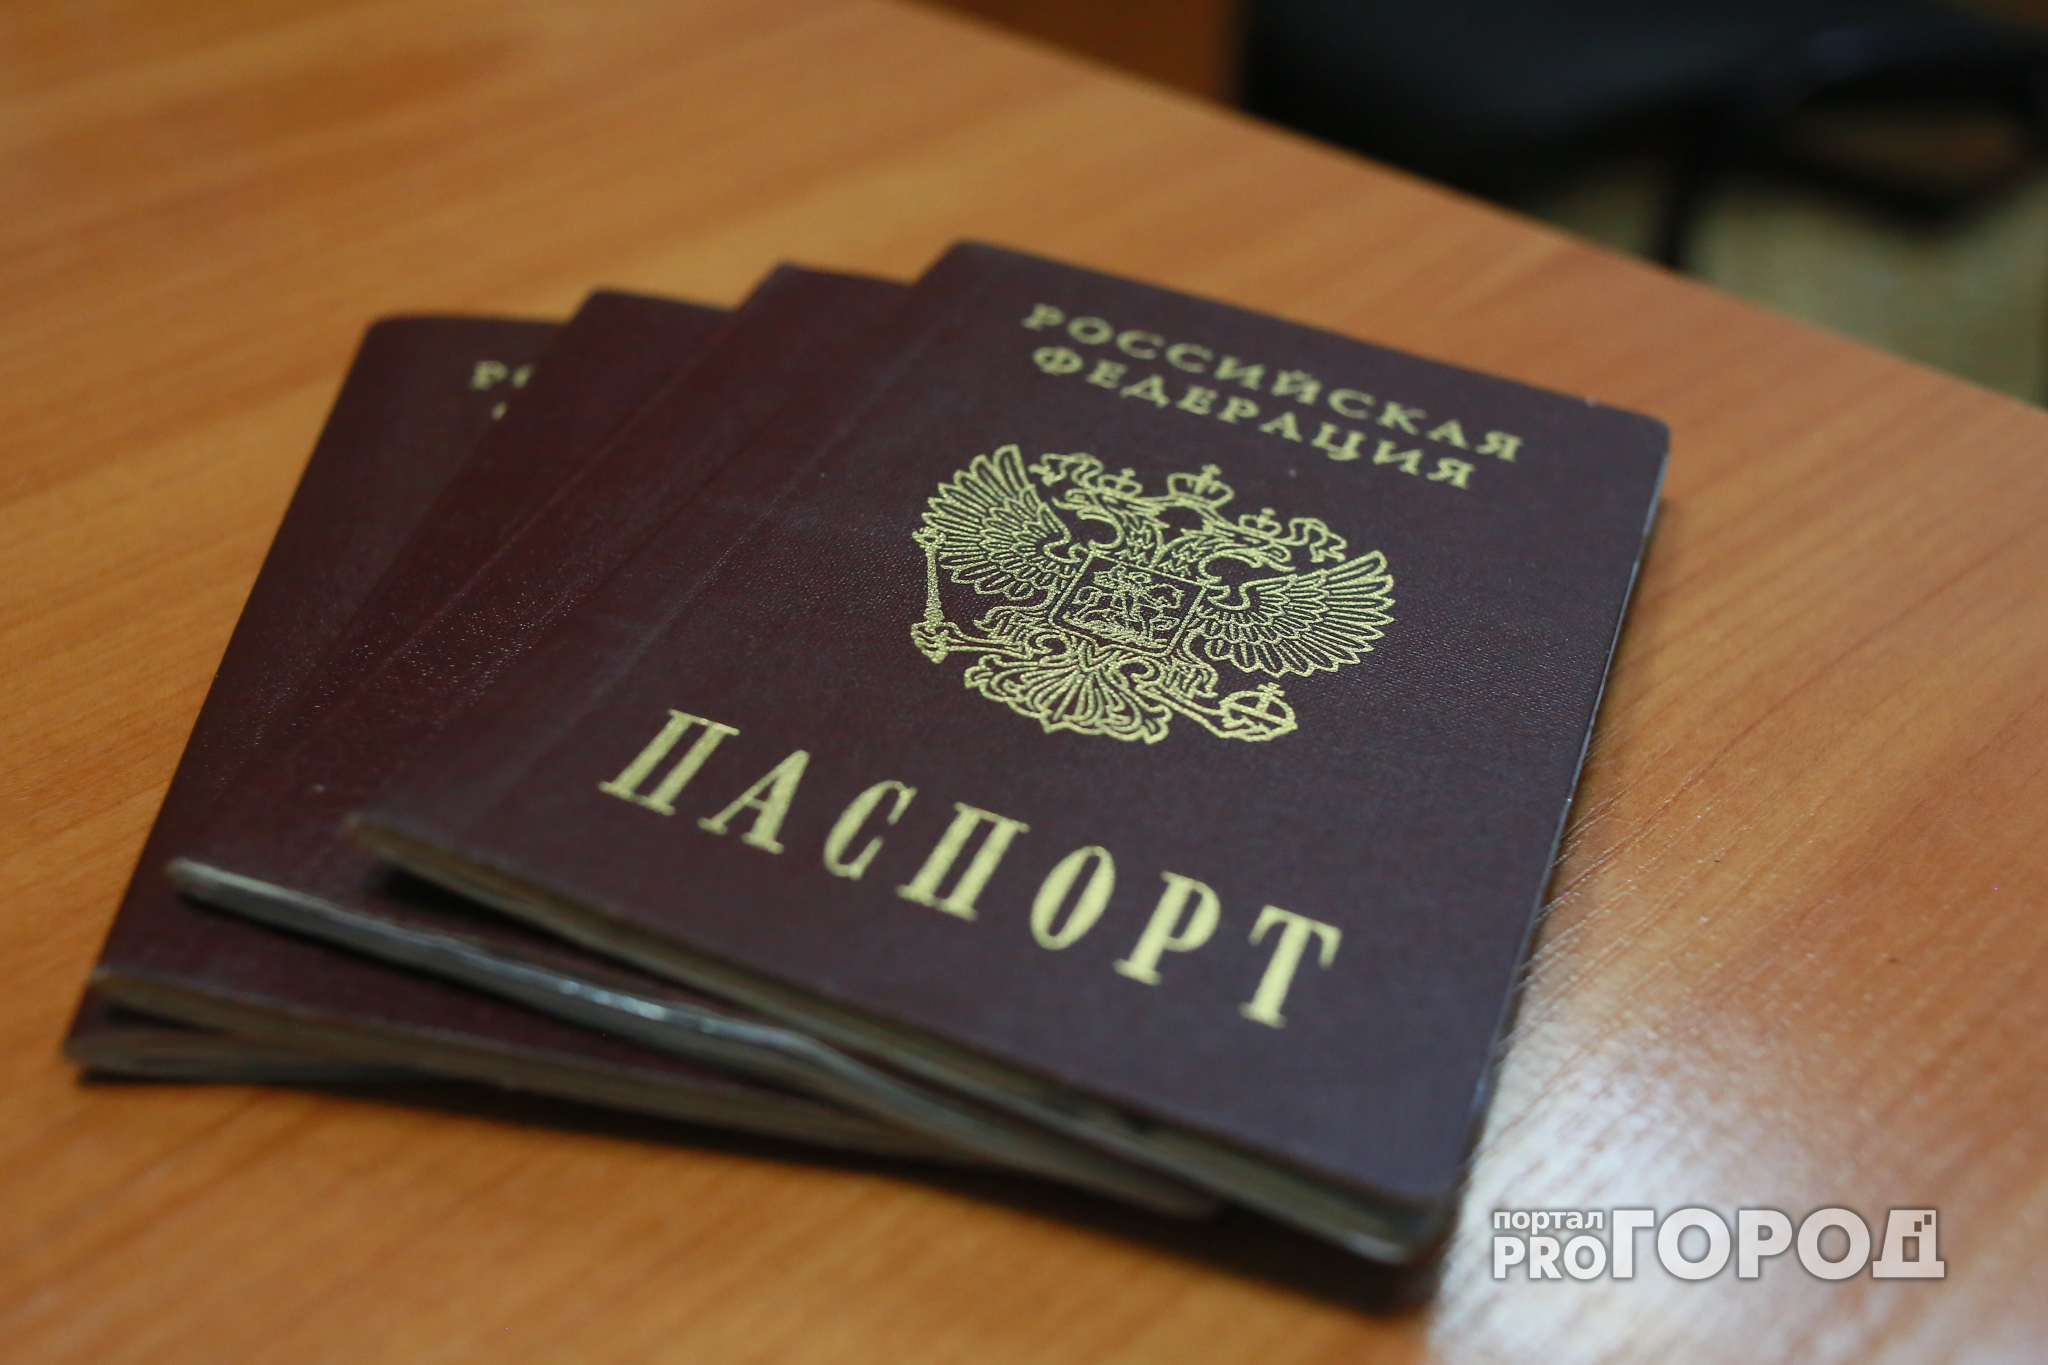 Новости России: срок получения нового паспорта может сократиться до часа